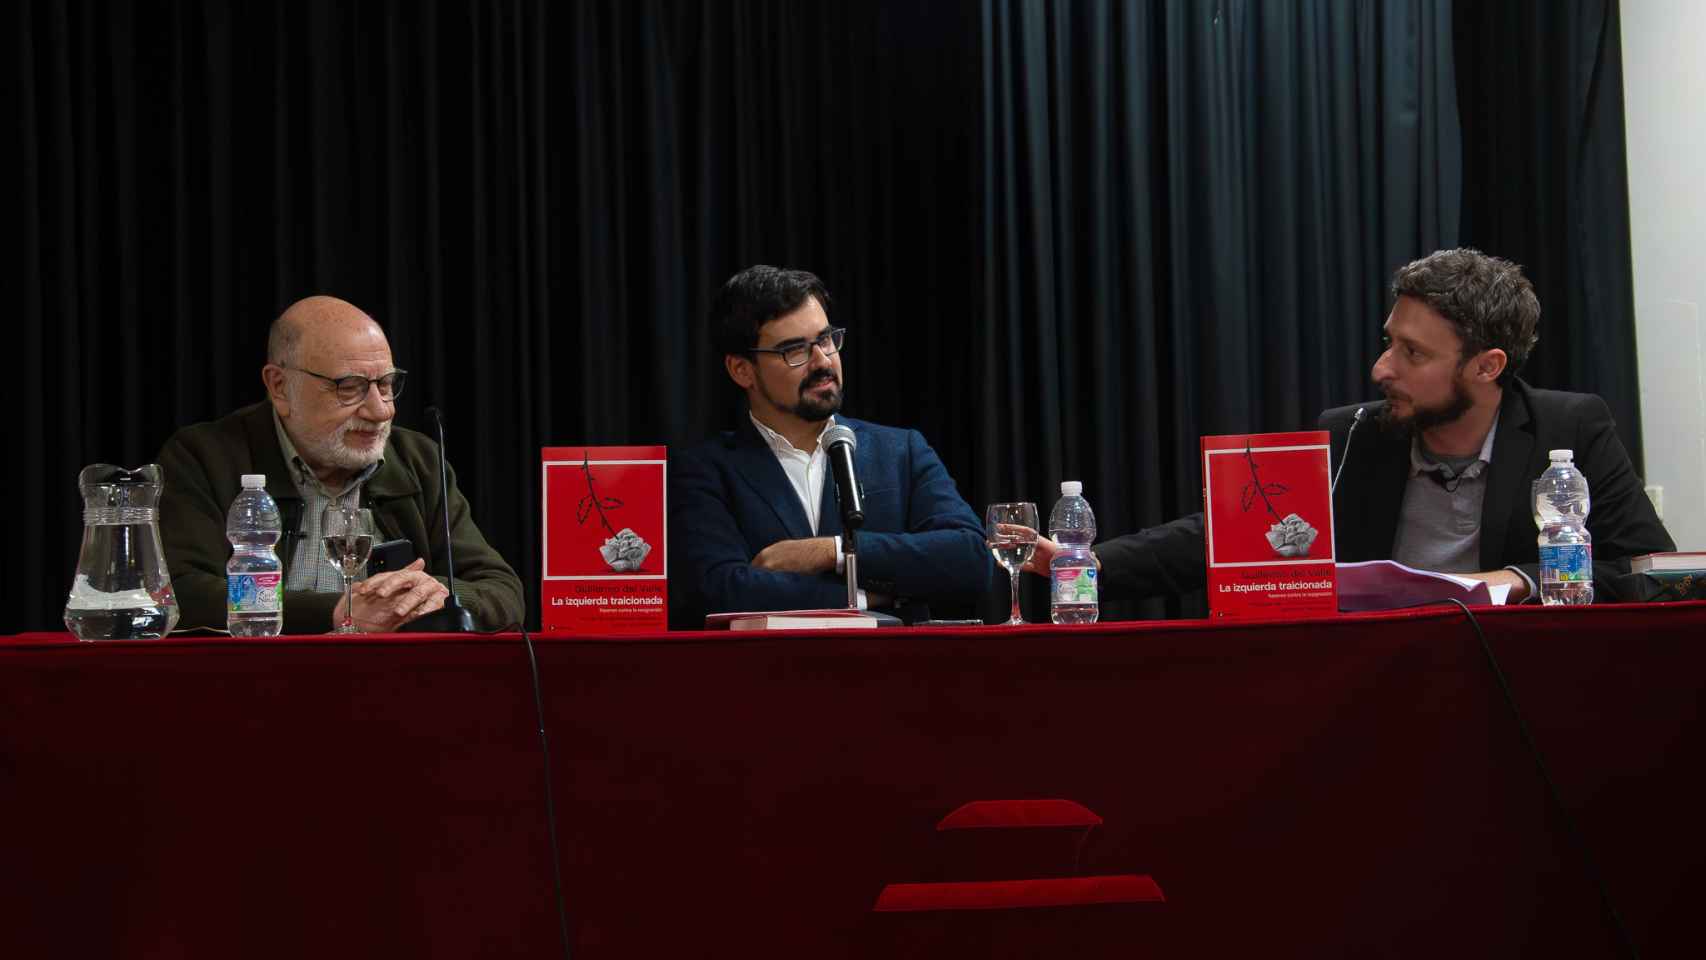 Presentación del libro de Guillermo del Valle en Madrid, junto a Jon Viar y Juan Francisco Martín Seco